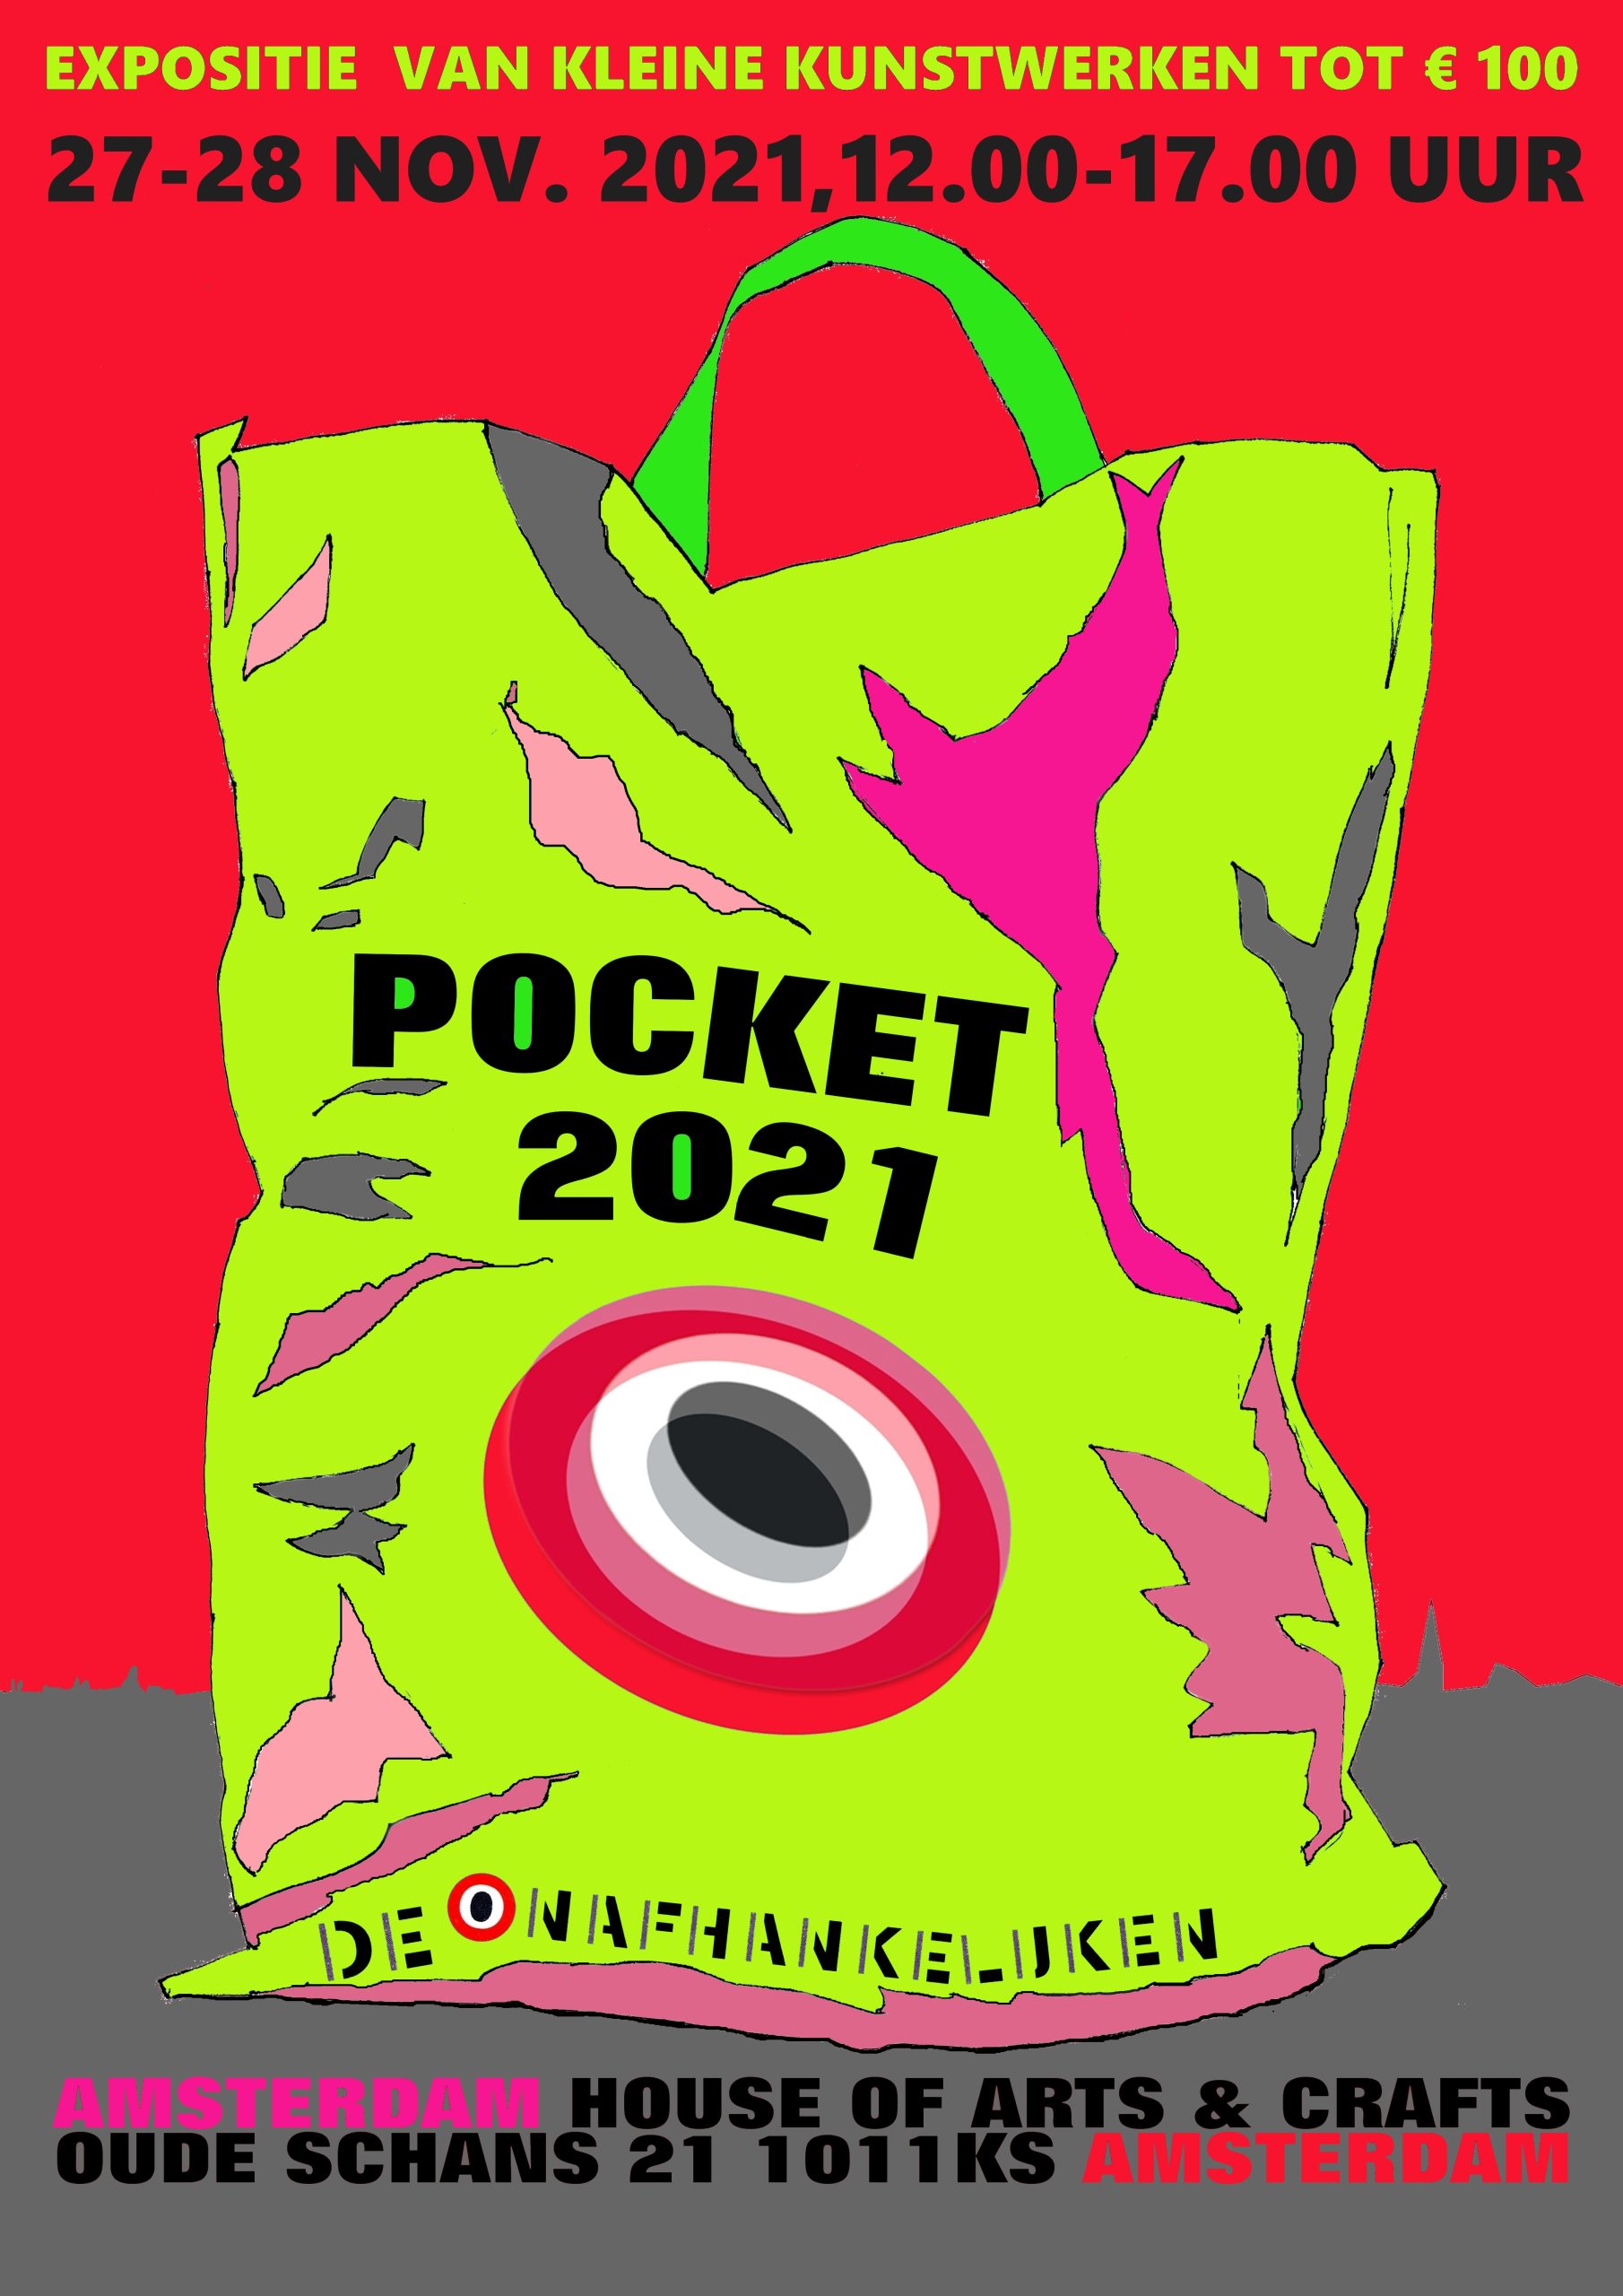 Featured image for “Pocket – De Onafhankelijken”